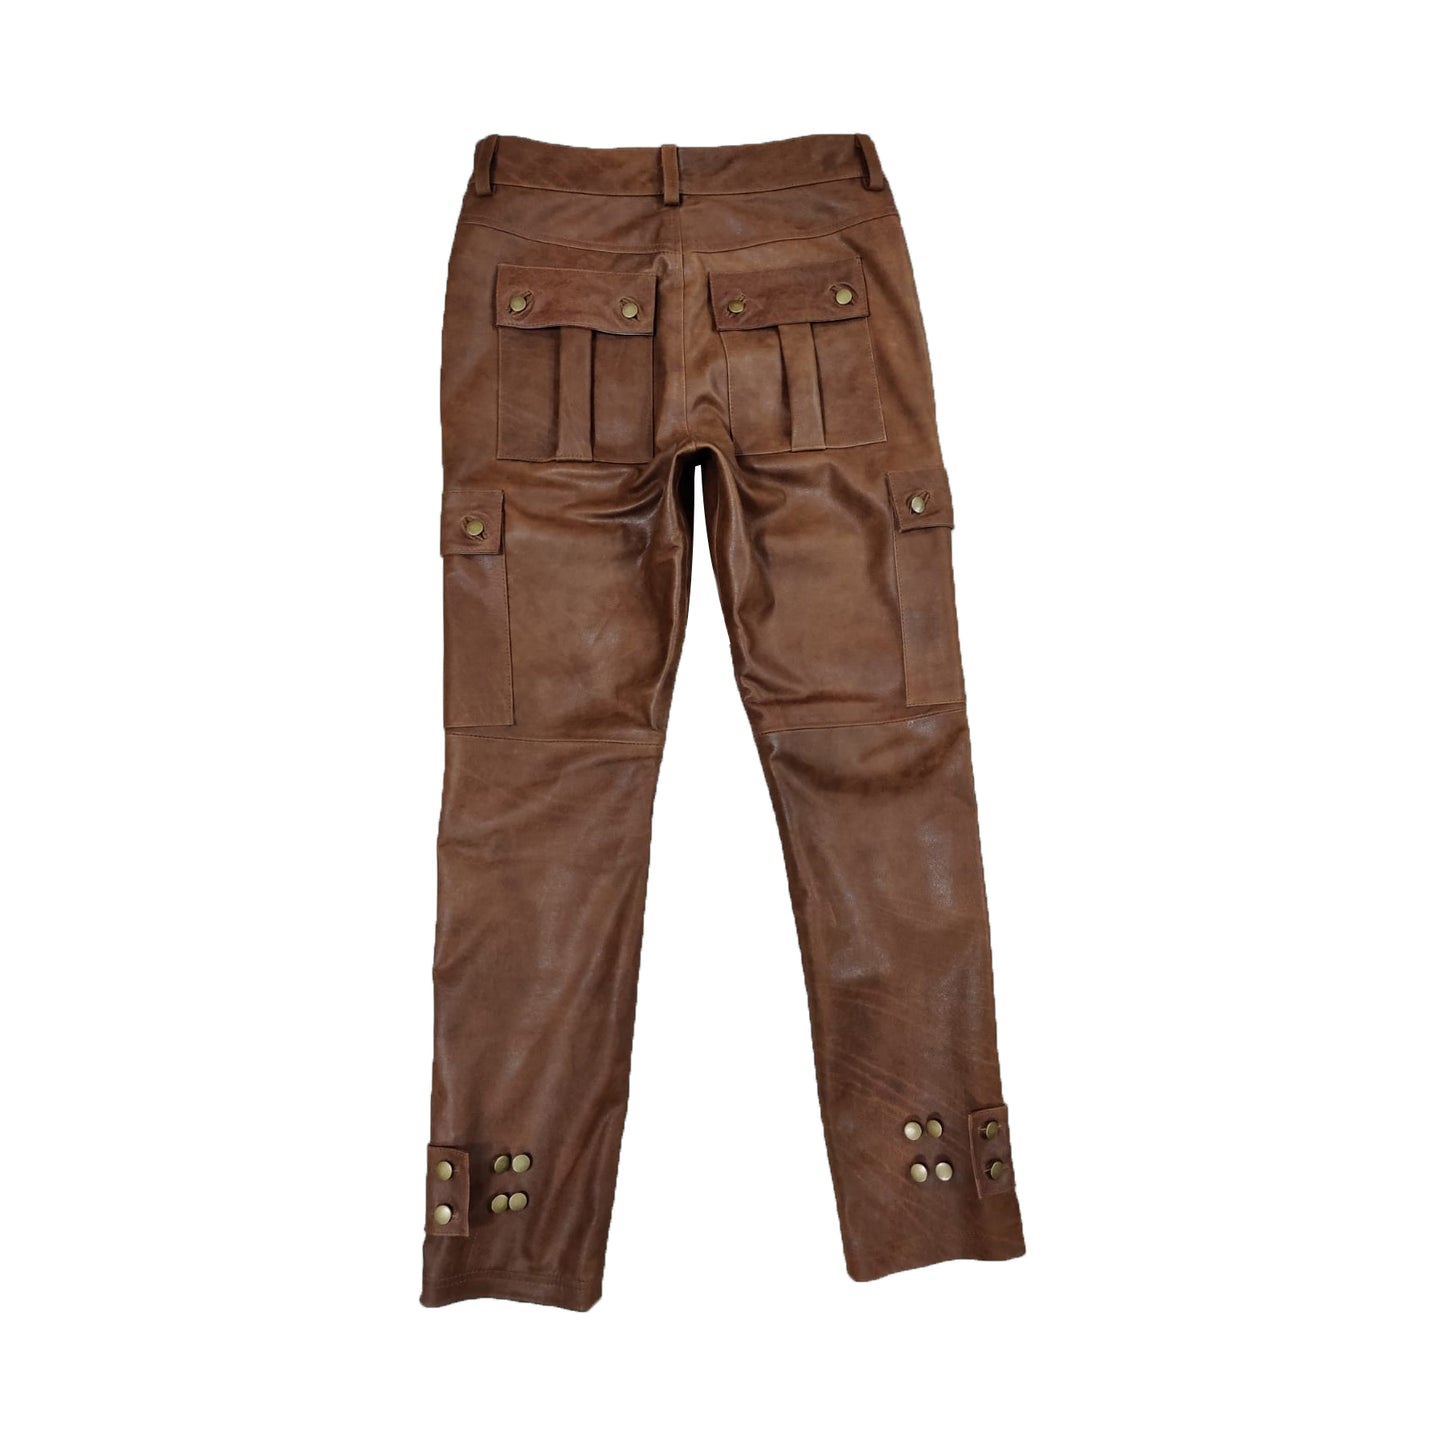 Men's Real Vintage Cowhide Leather Cargo Pants Bikers Pants